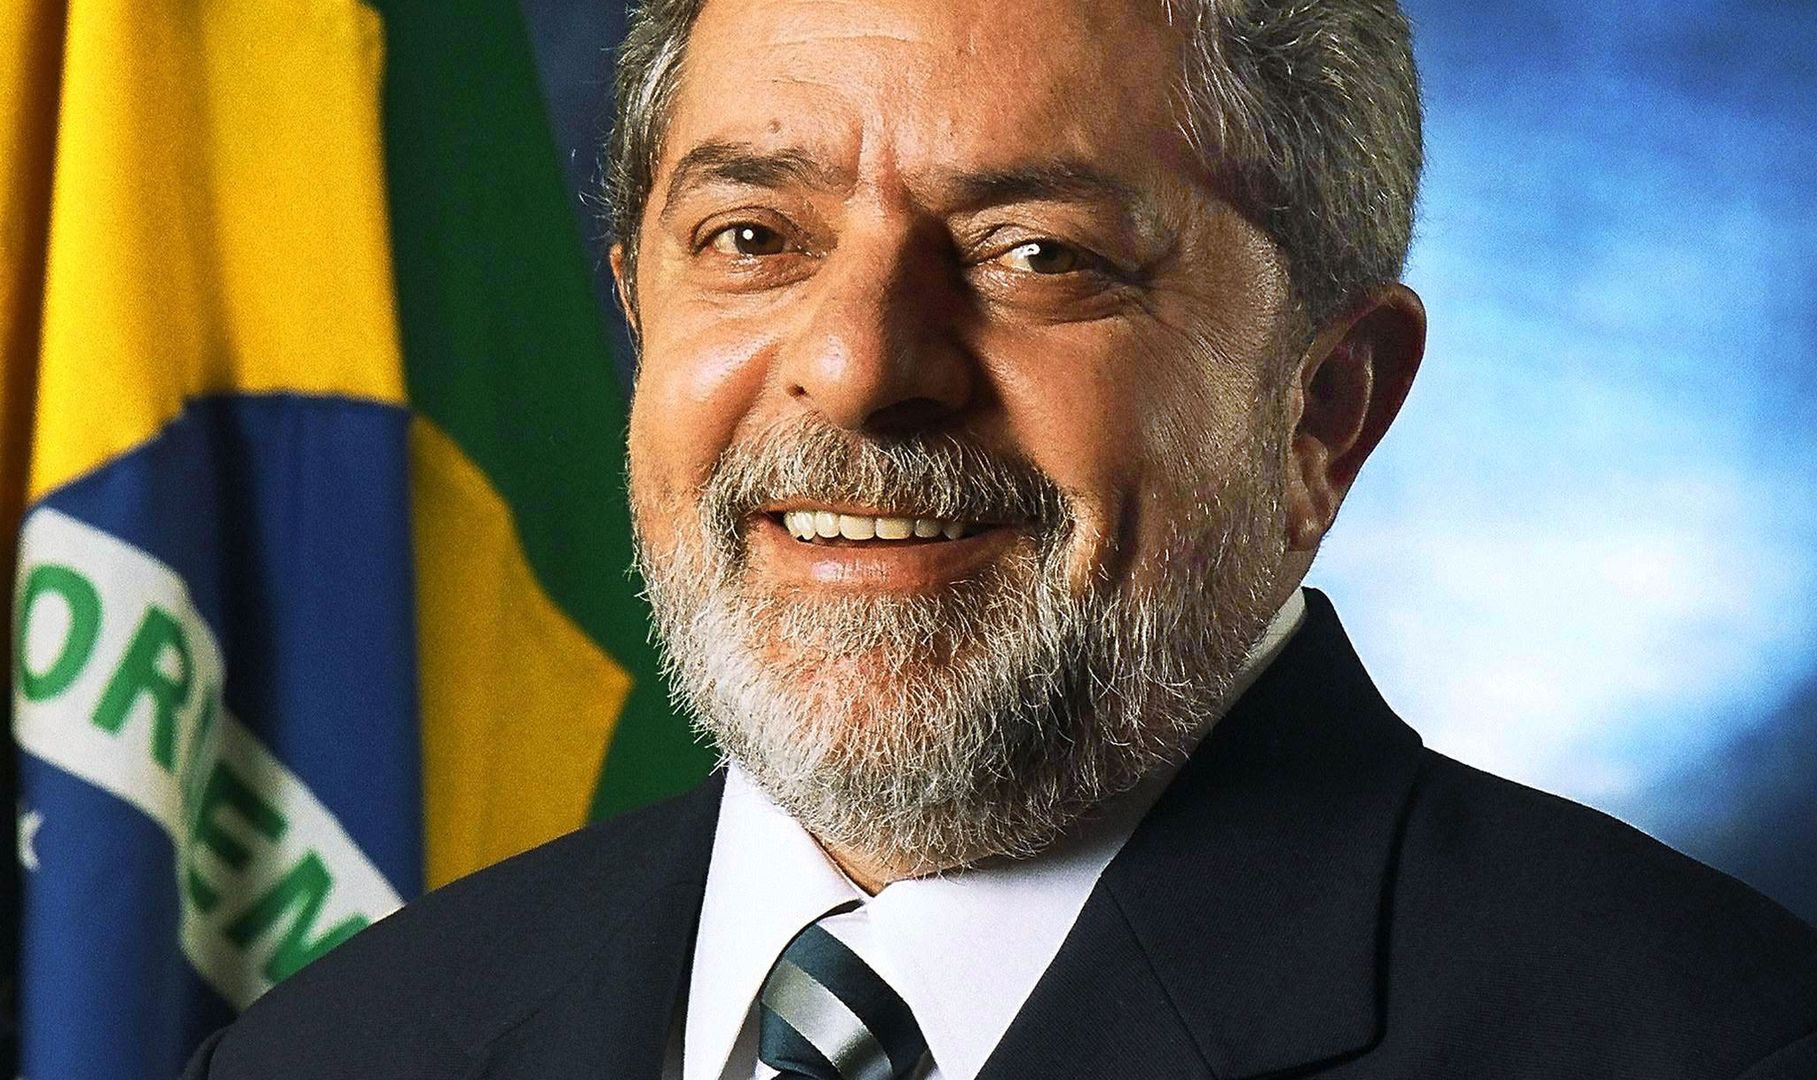 Korupcyjny skandal stulecia. Były prezydent Brazylii aresztowany